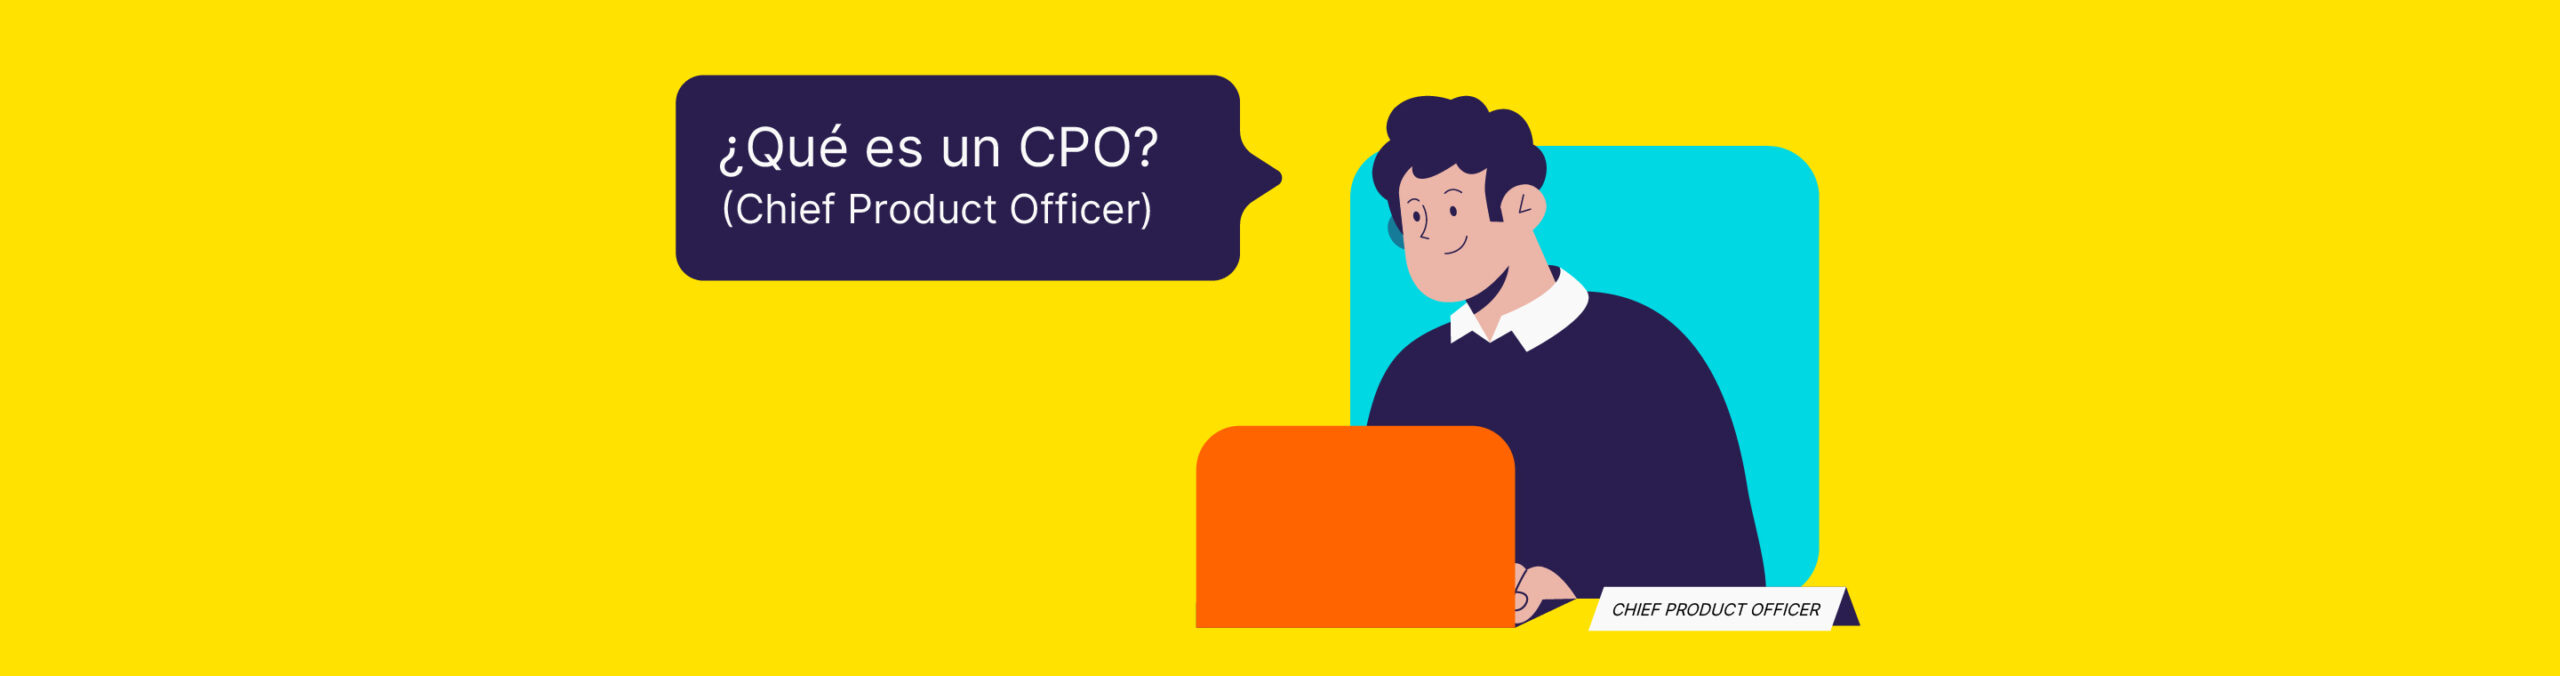 ¿Qué es CPO? (Chief Product Officer)